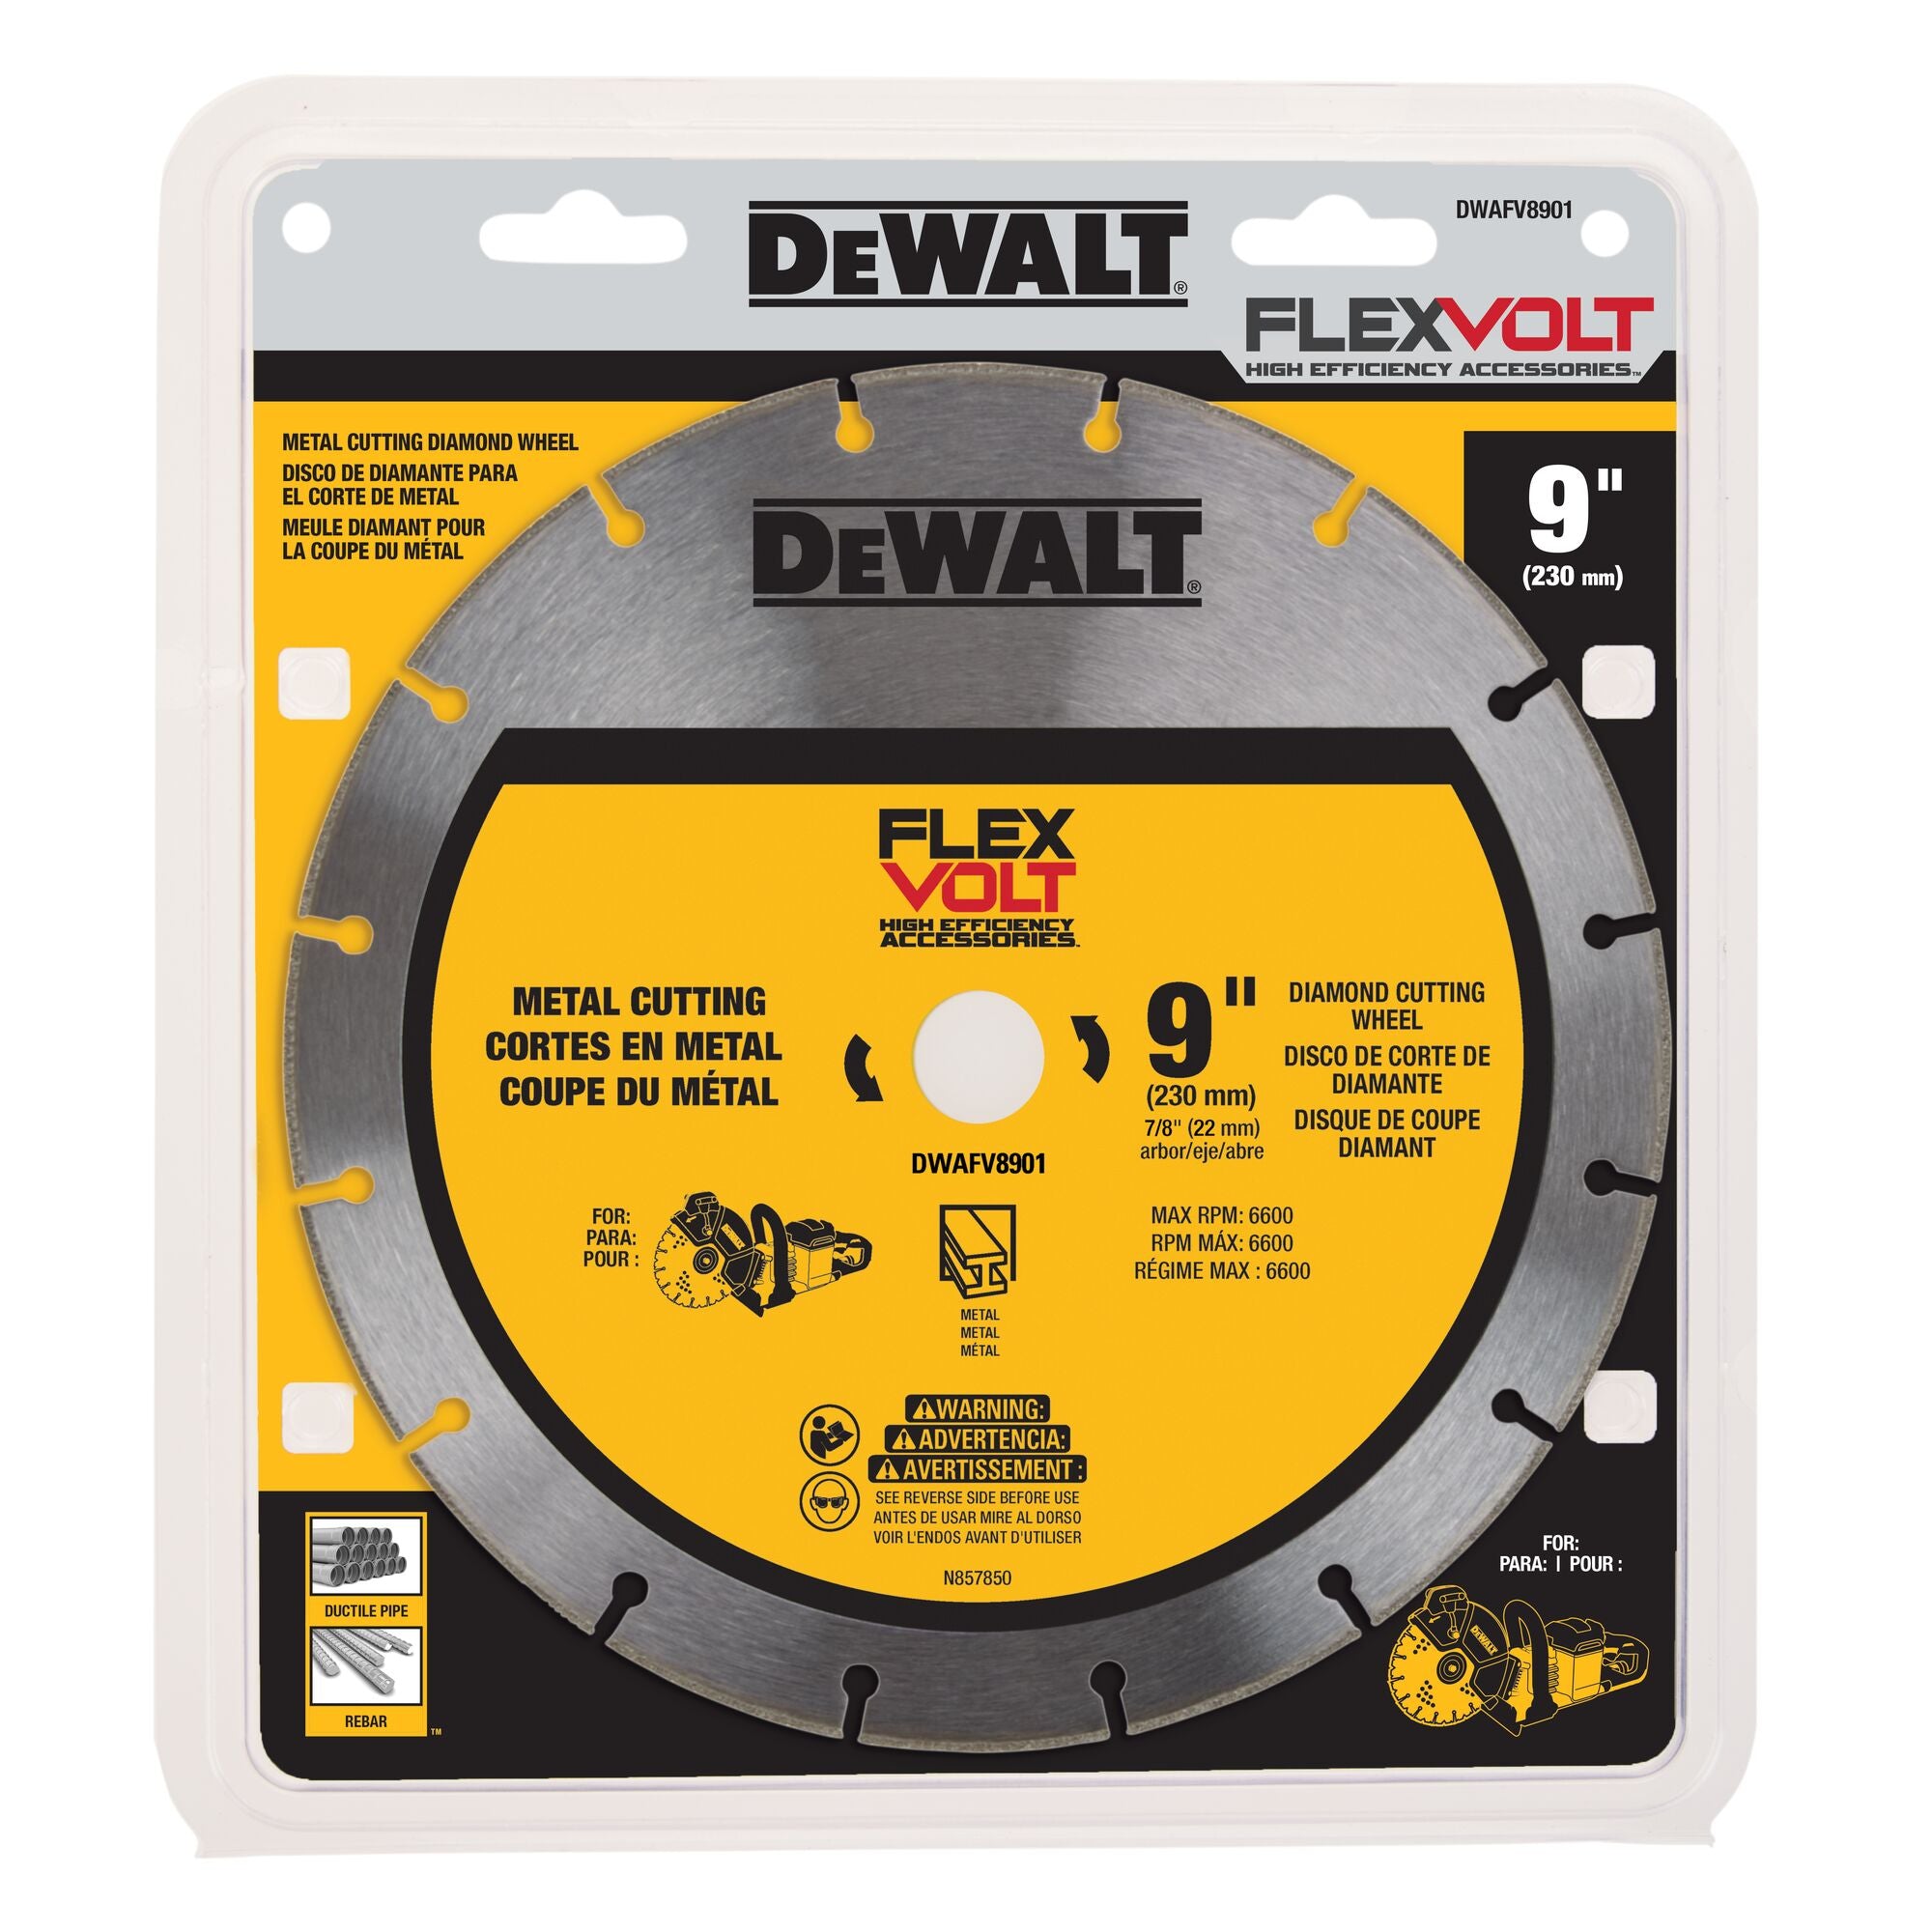 DeWALT DWAFV8901 9" Diamond Cutting Wheel for Metal for DCS690 Saw